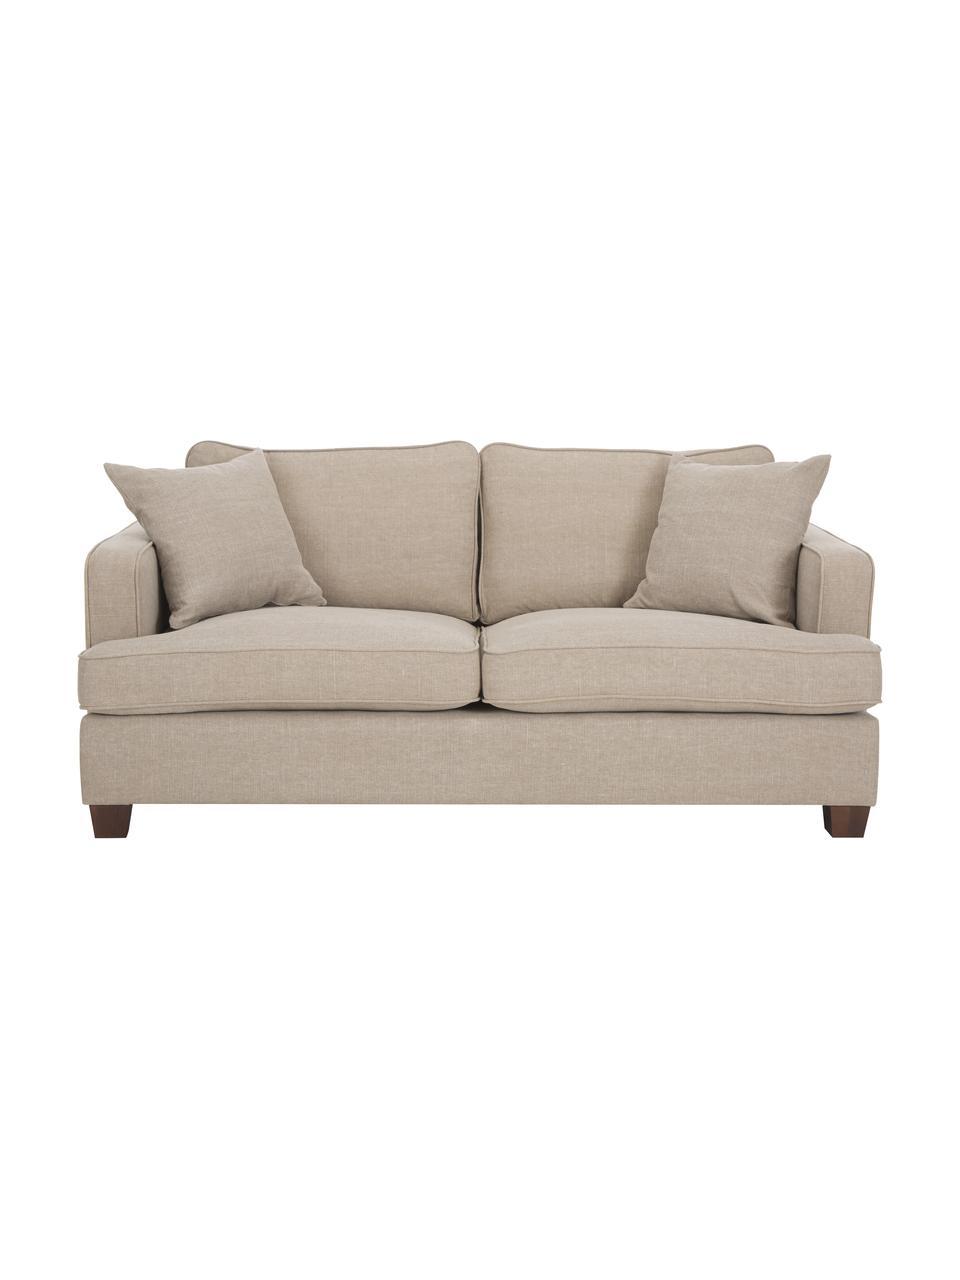 Duża sofa Warren (2-osobowa), Tapicerka: 60% bawełna, 40% len, Nogi: czarne drewno, Beżowy, S 178 x W 85 cm